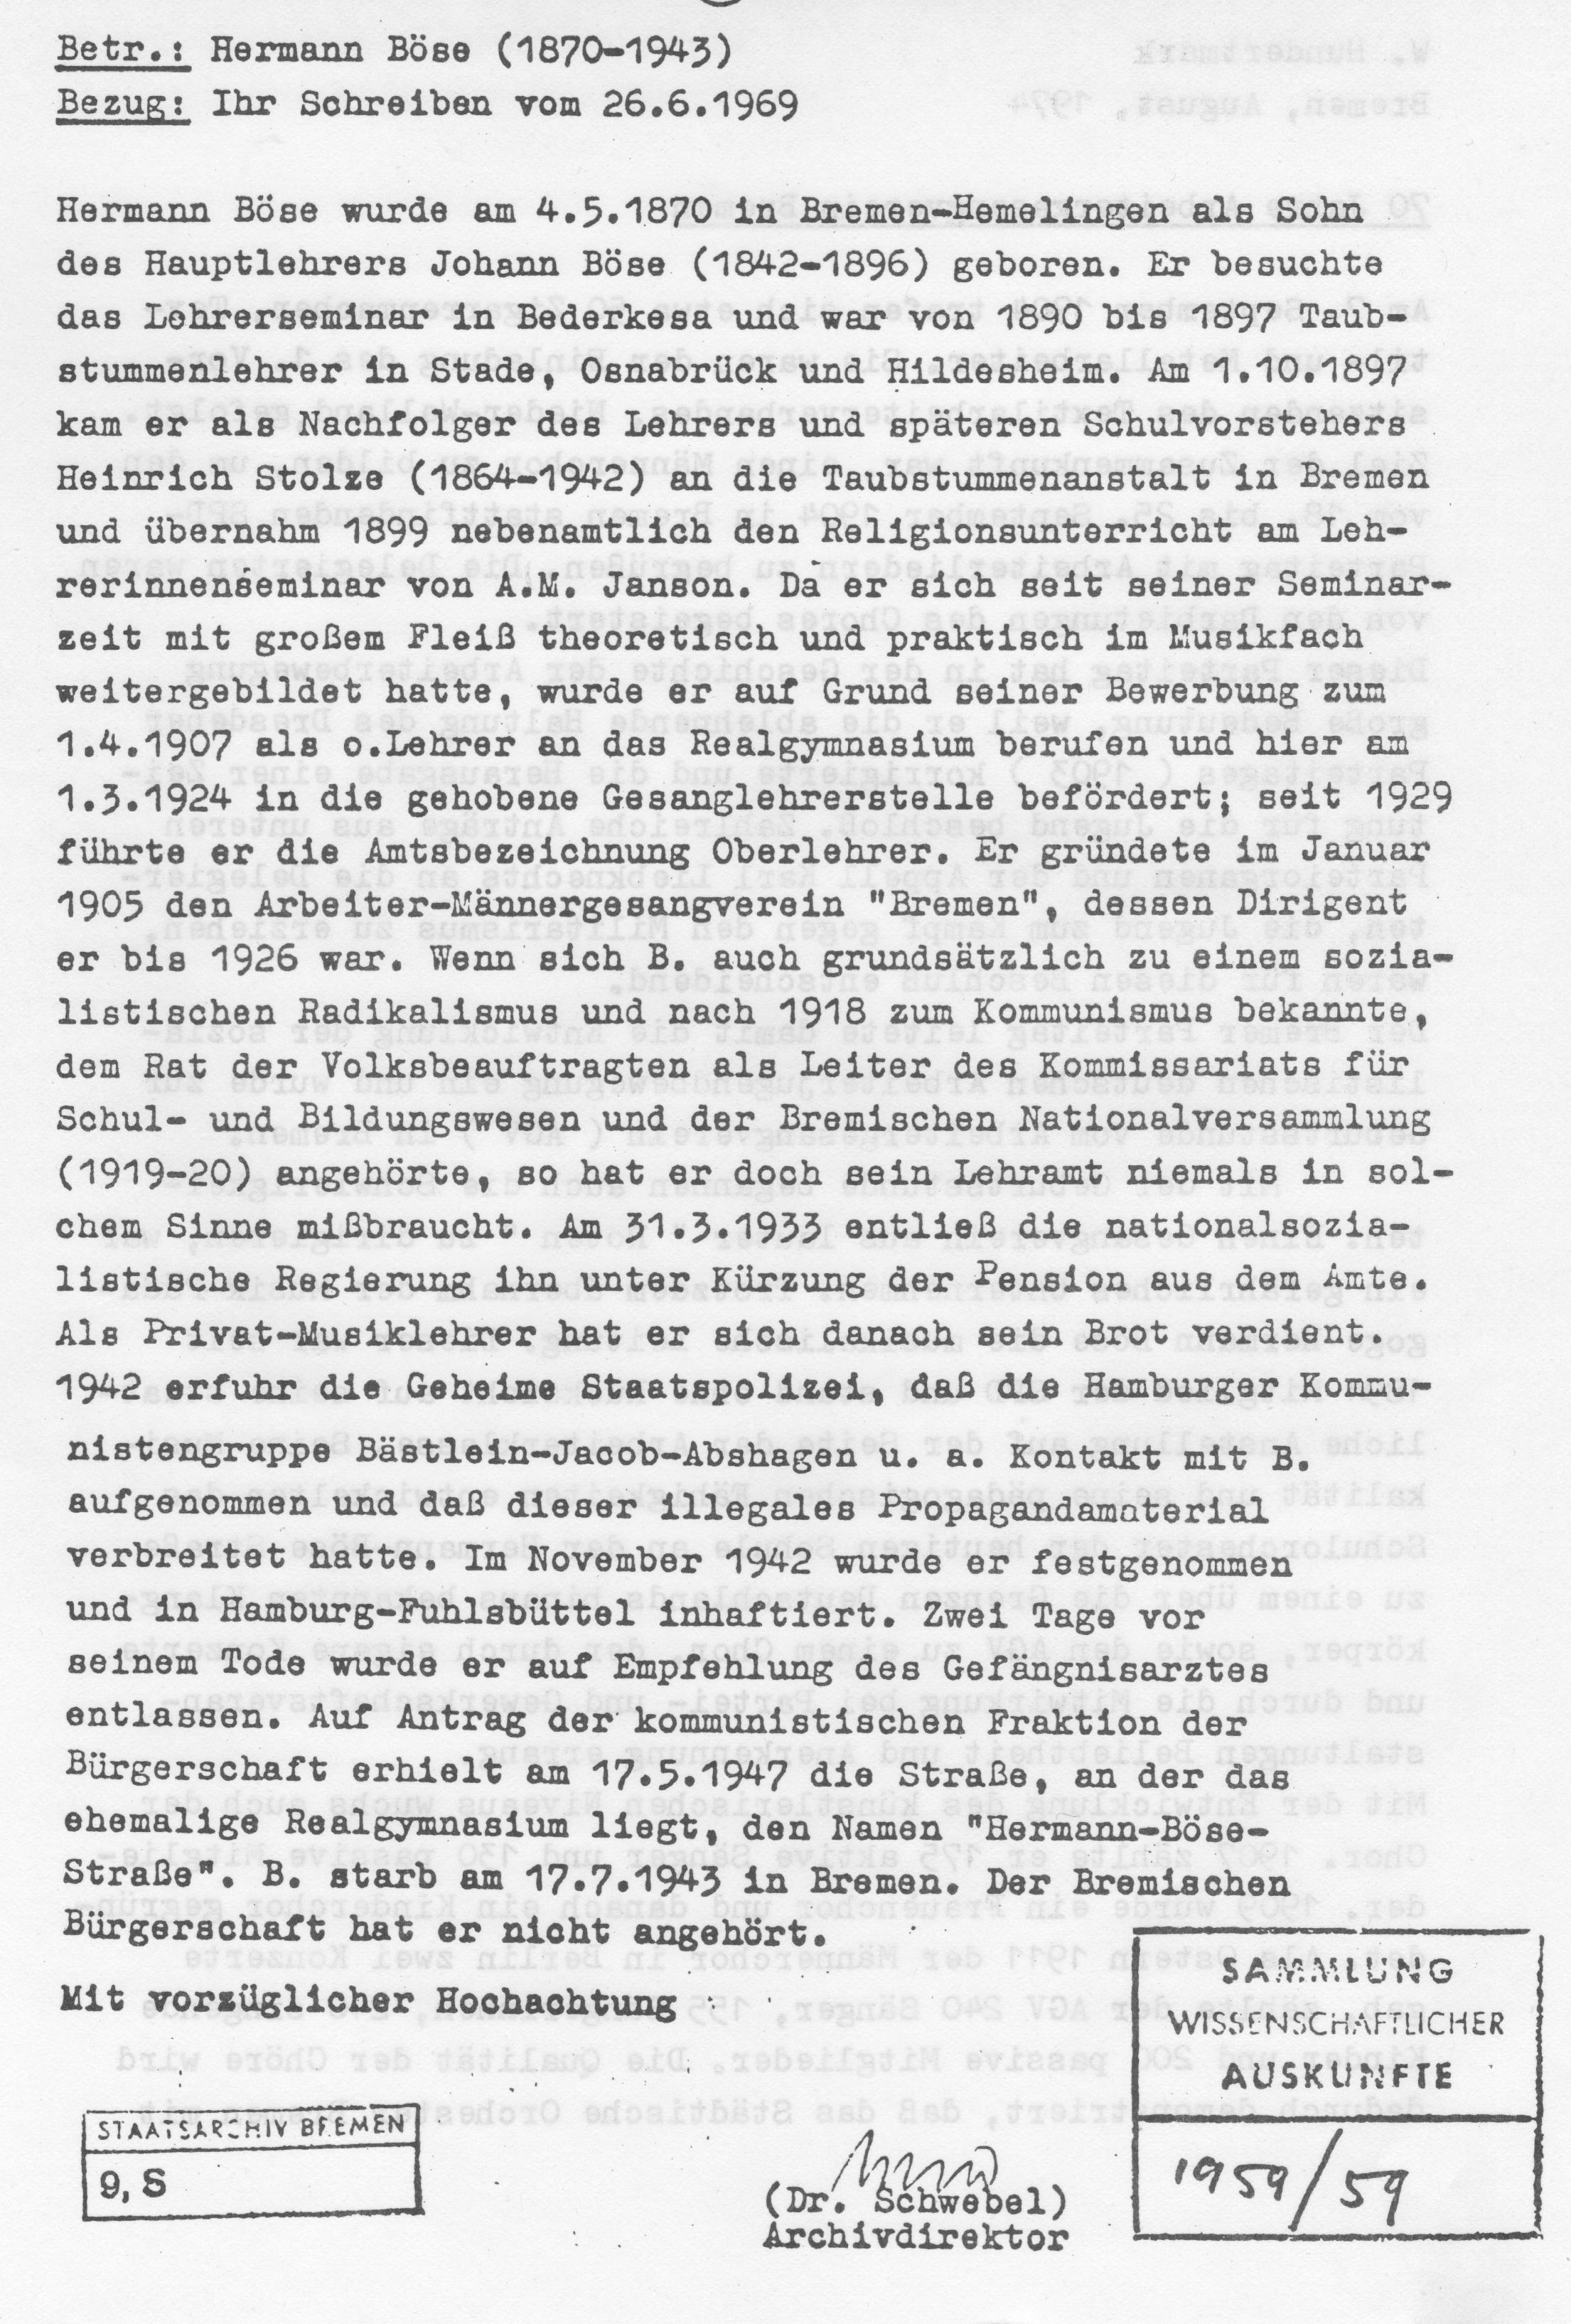 Dieses Bild zeigt das Dokument vom Staatsarchiv Bremen über Hermann Böse